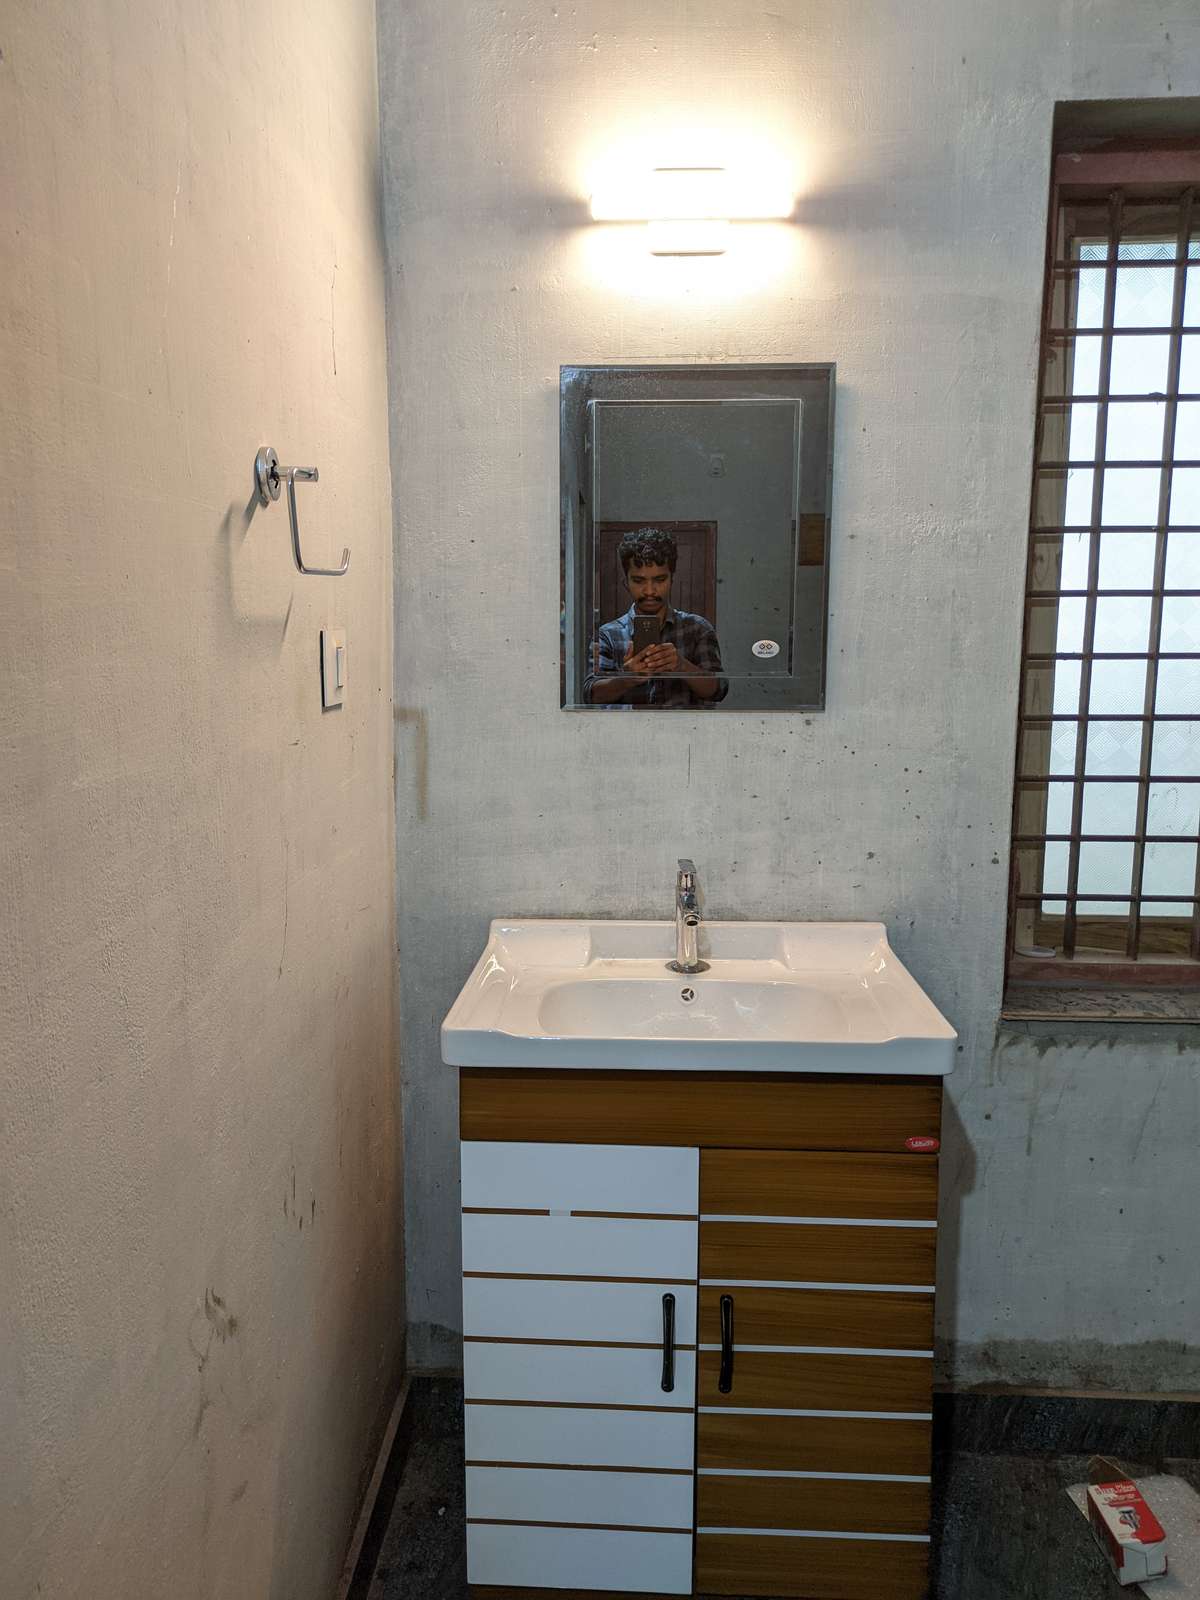 New , Box Type Wash Basin Fitting
#basin  #washbasinDesig  #washbasin